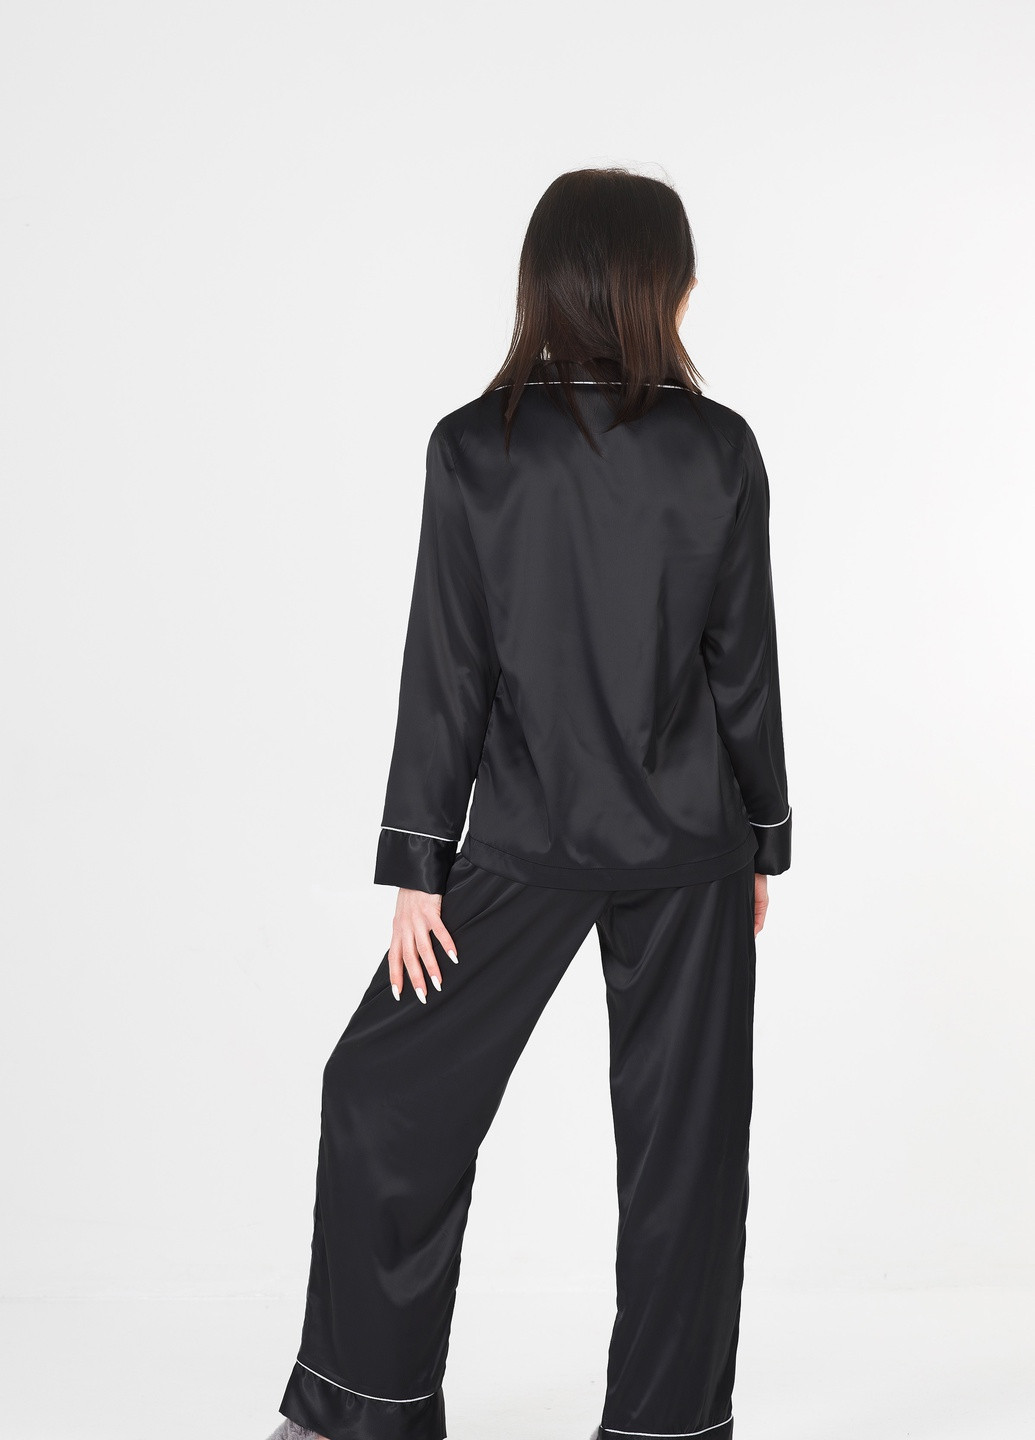 Черная всесезон черная с белым кантом пижама (рубашка + штаны) рубашка + брюки SONTSVIT